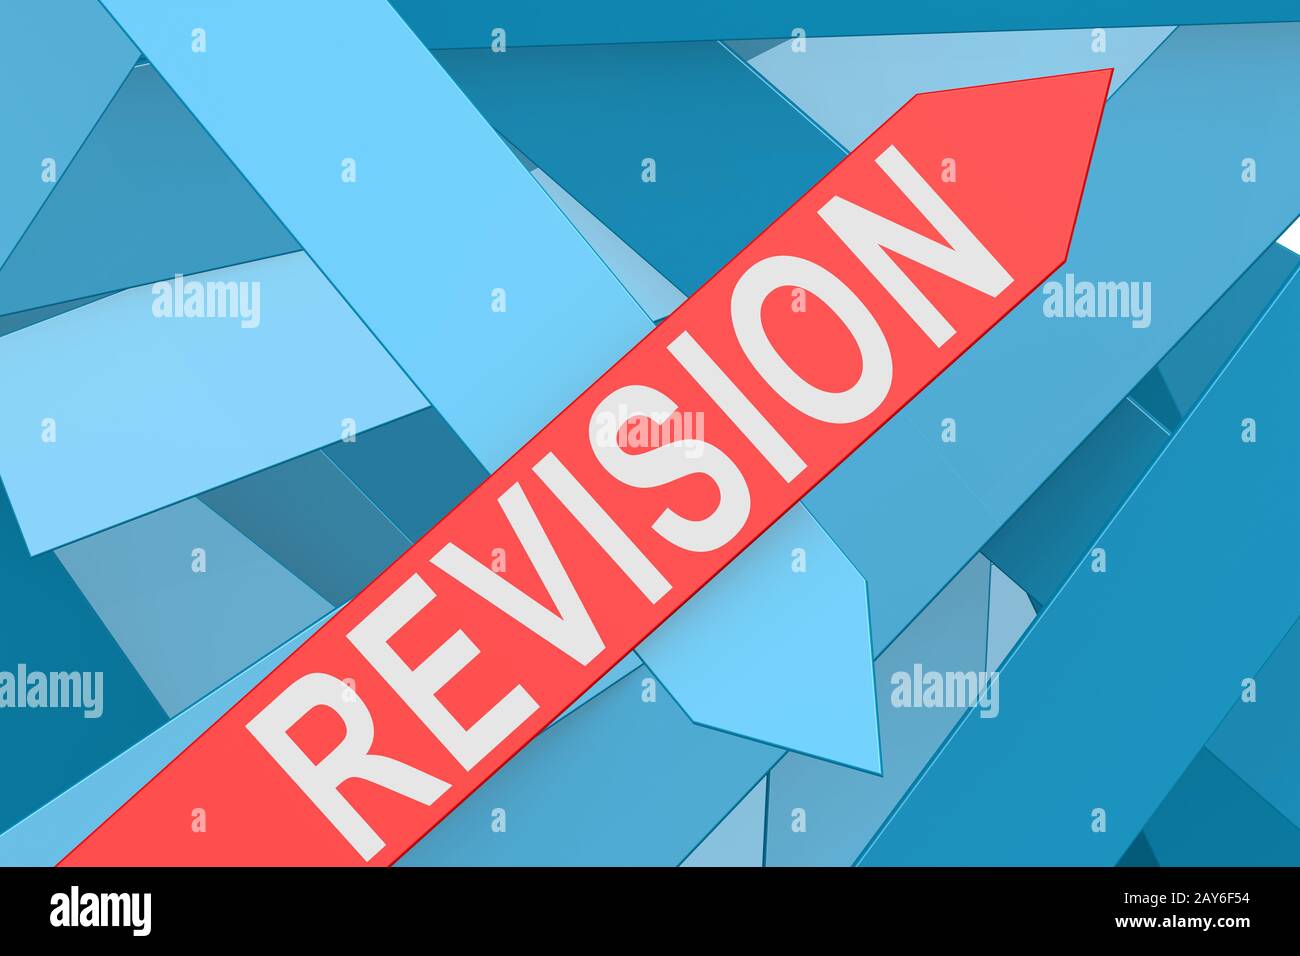 Revision arrow pointing upward Stock Photo